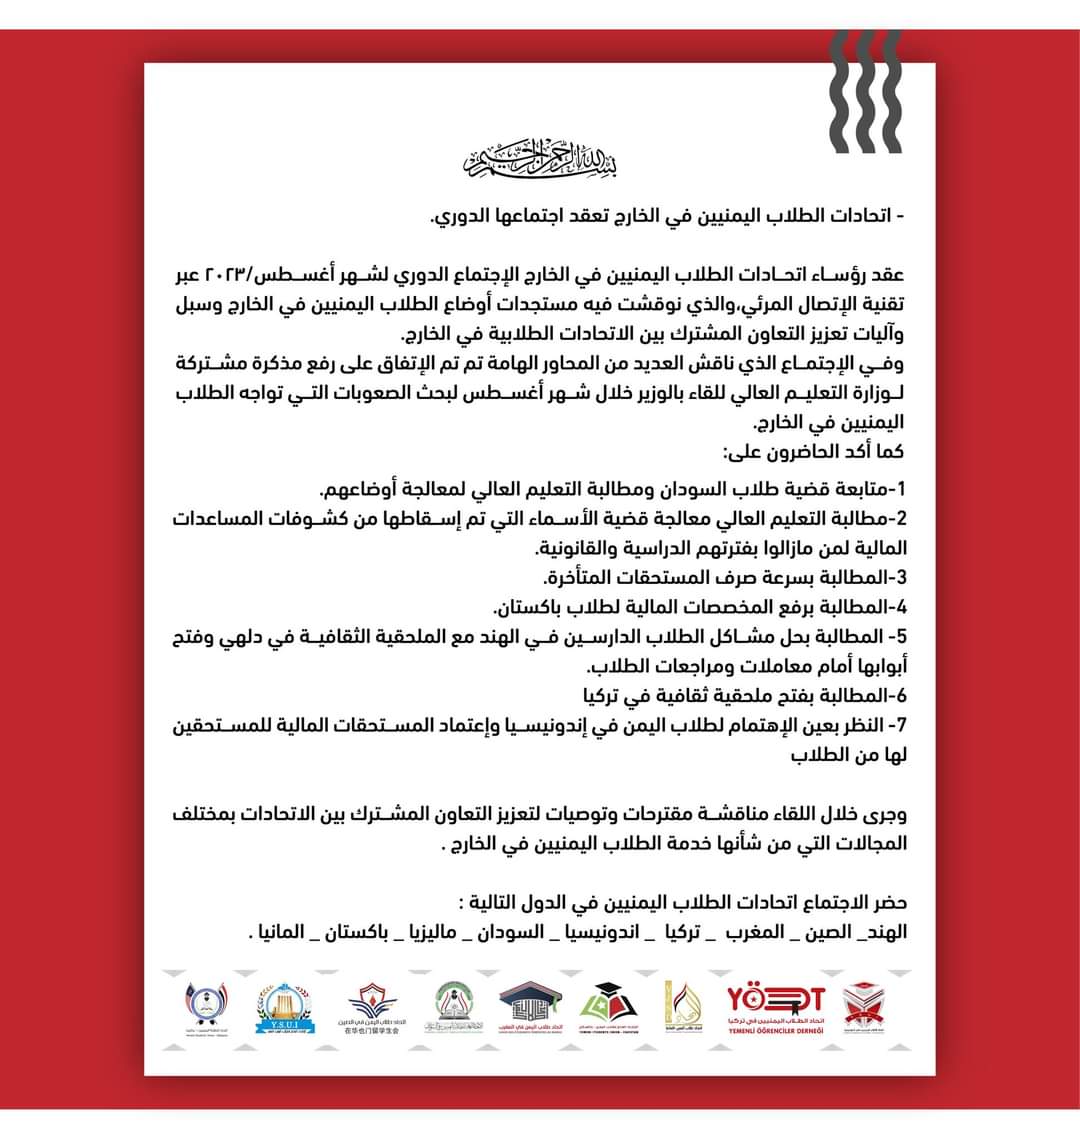 اتحادات الطلاب اليمنيين في الخارج تطالب بصرف المستحقات المتأخرة وحل مشكلة الأسماء المسقطة من الكشوفات